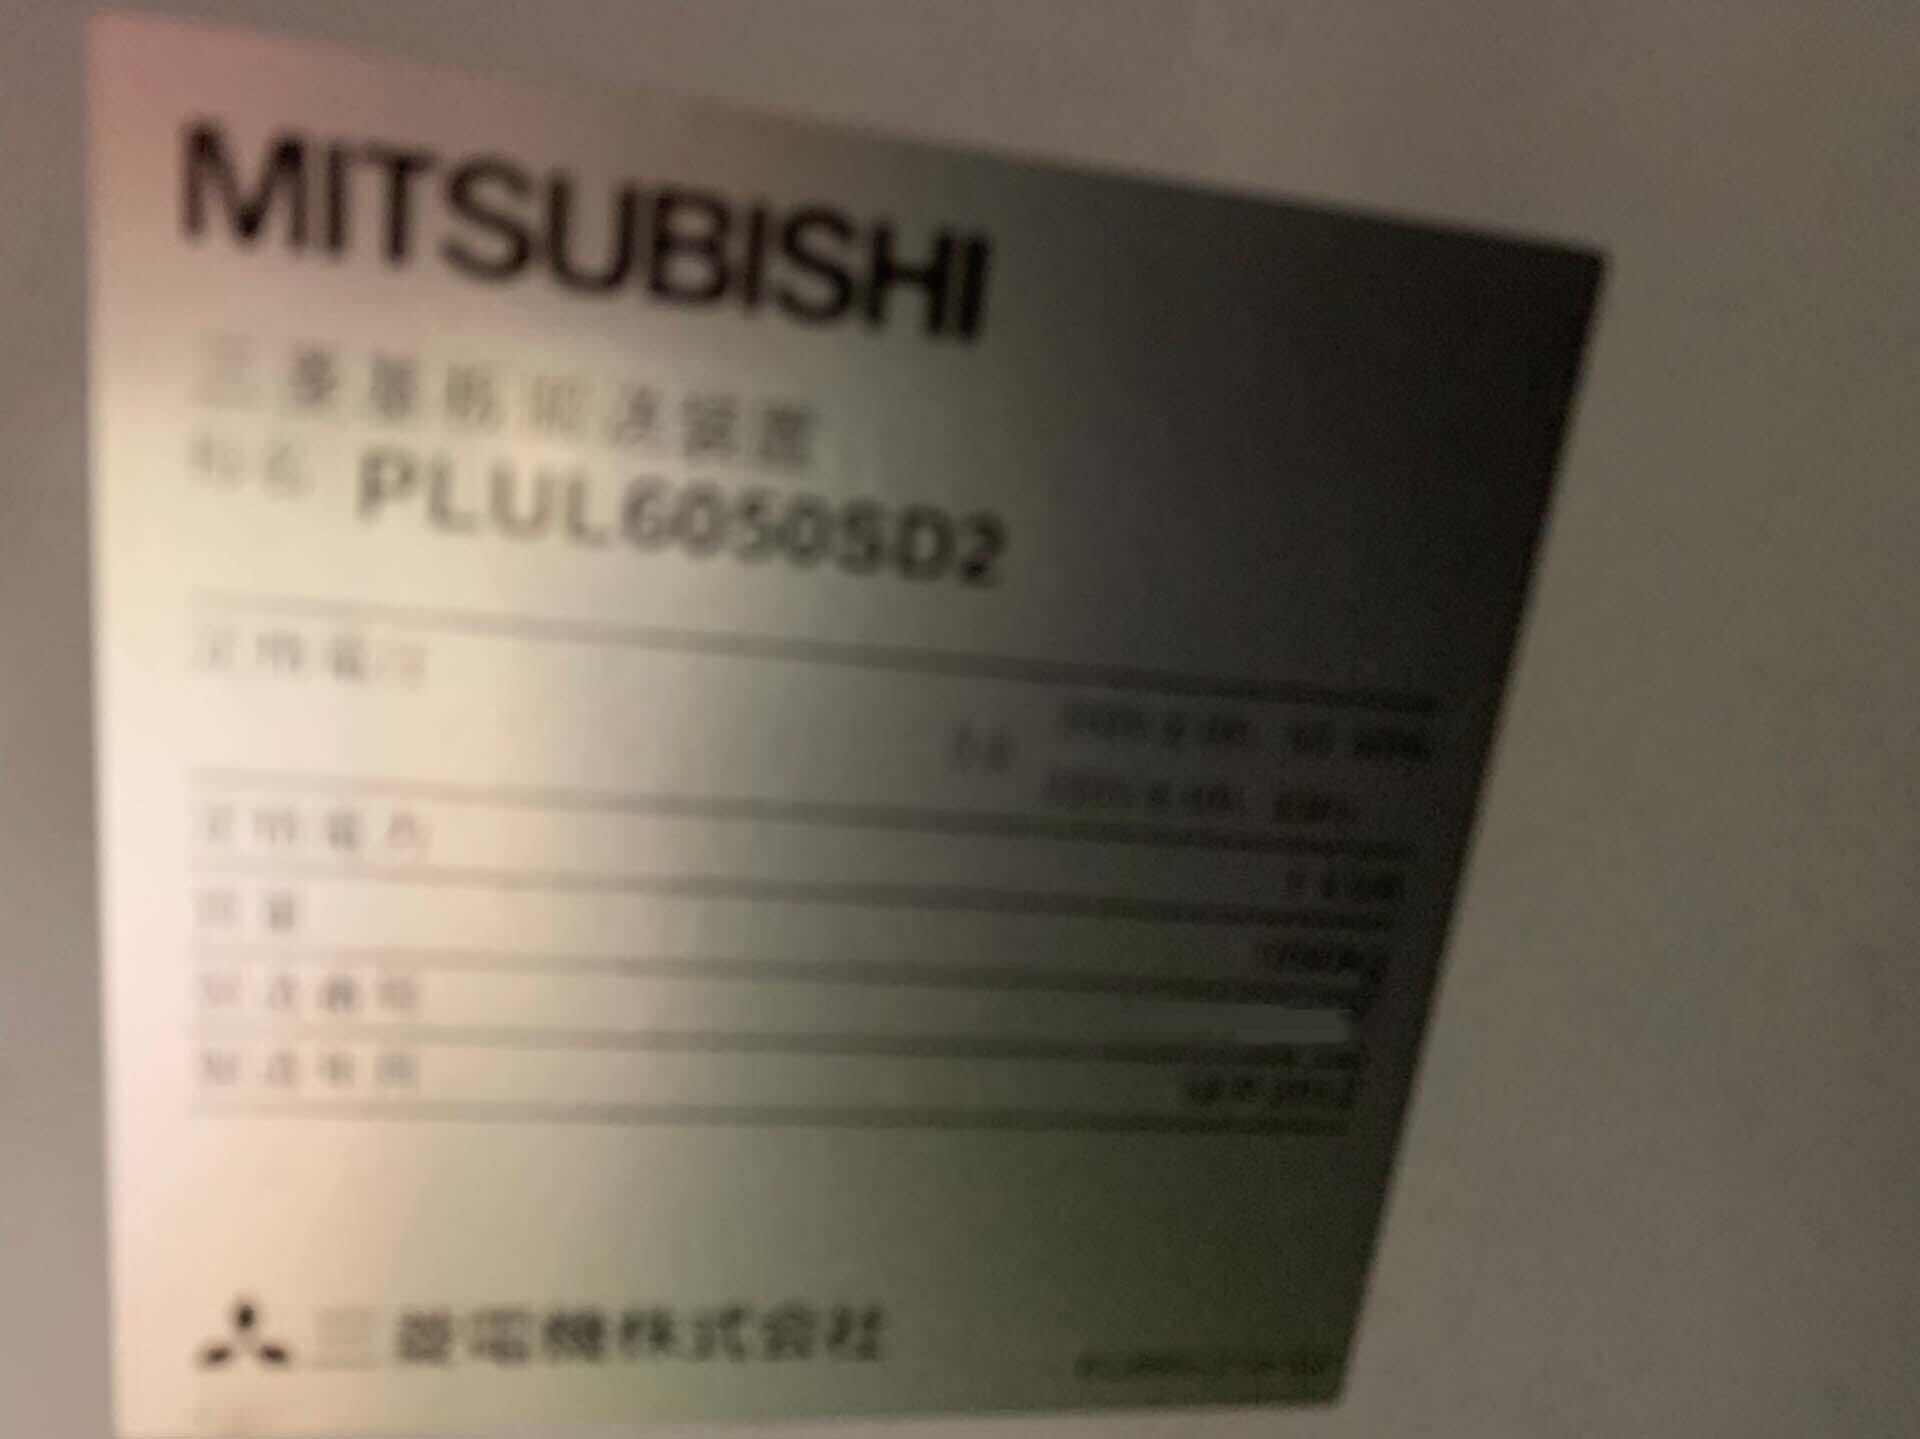 フォト（写真） 使用される MITSUBISHI ML605GTWIII-(P)-5200U 販売のために